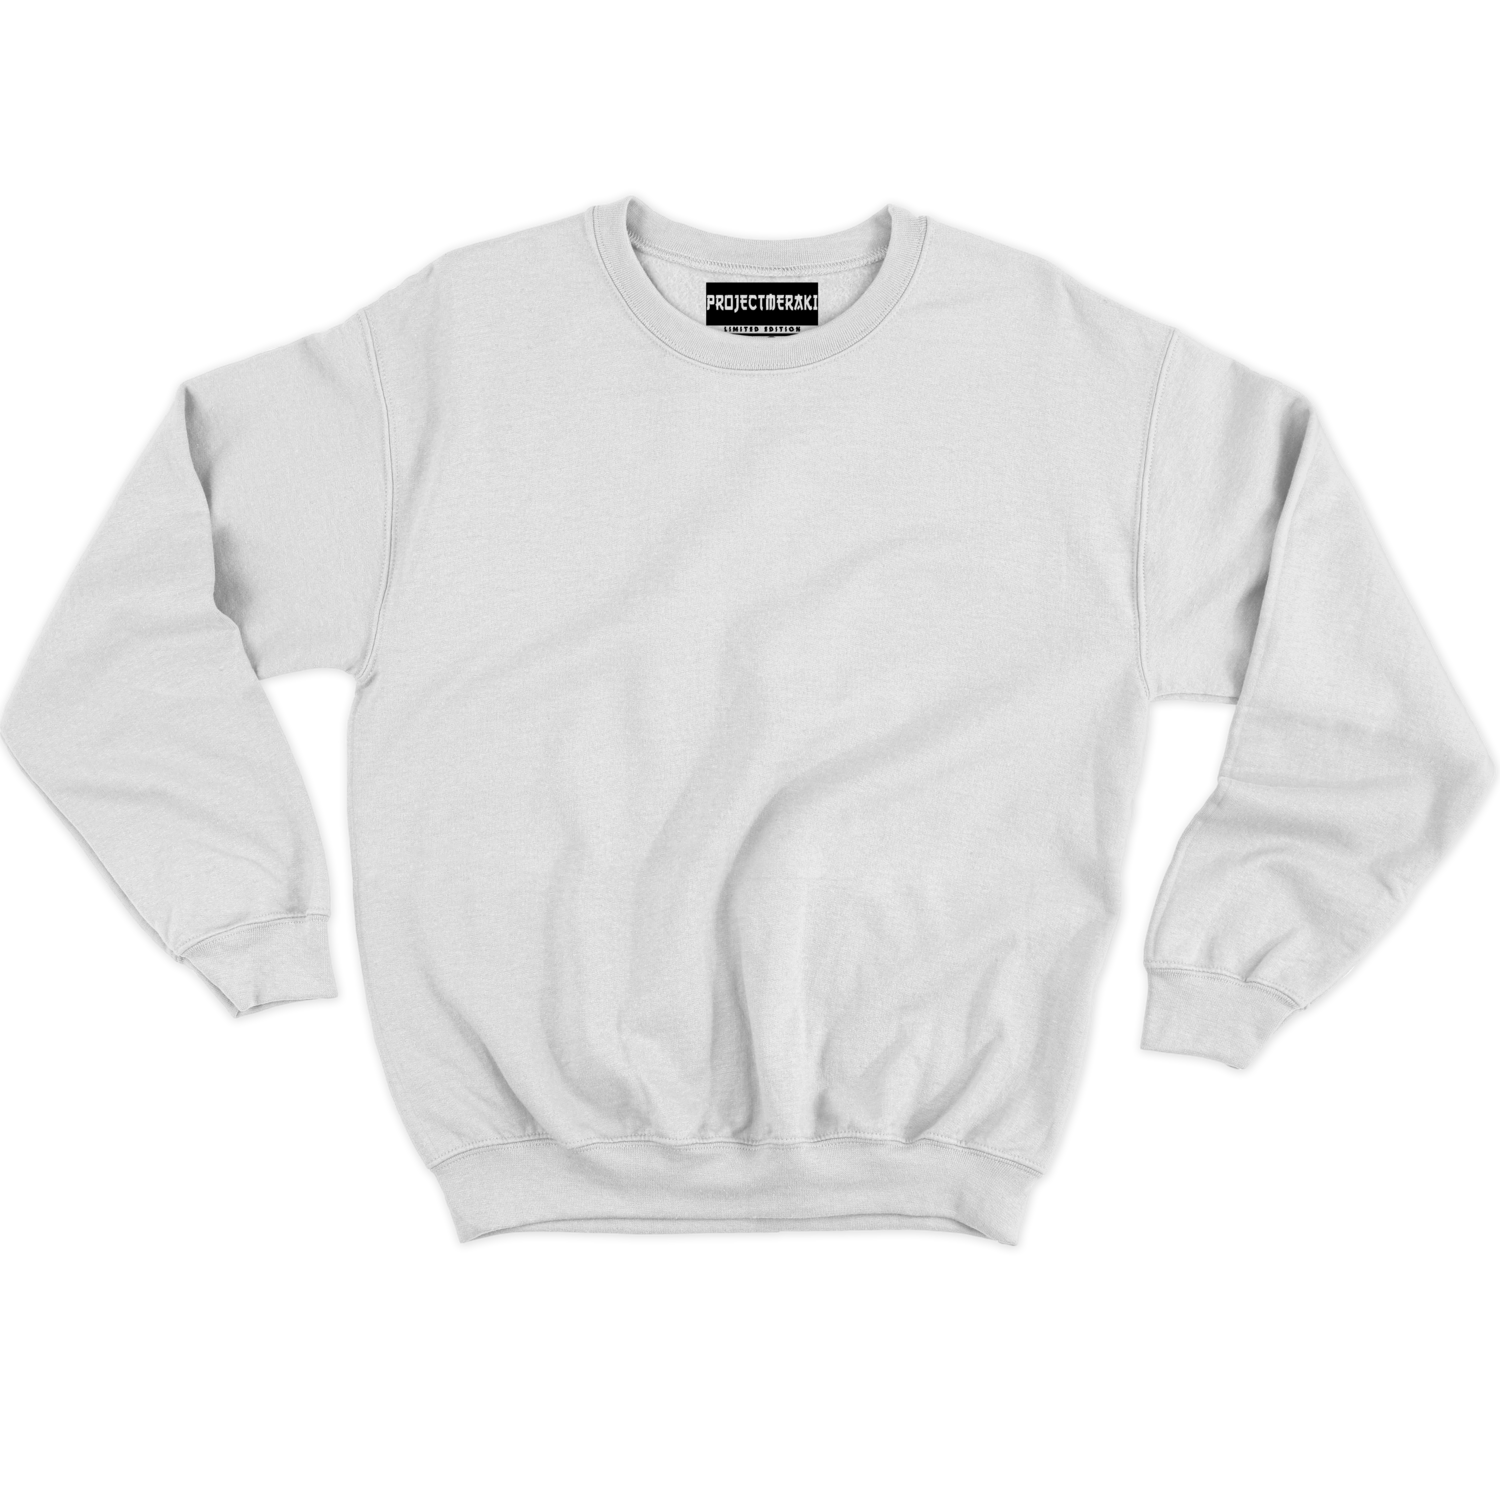 Snowy White Sweatshirt